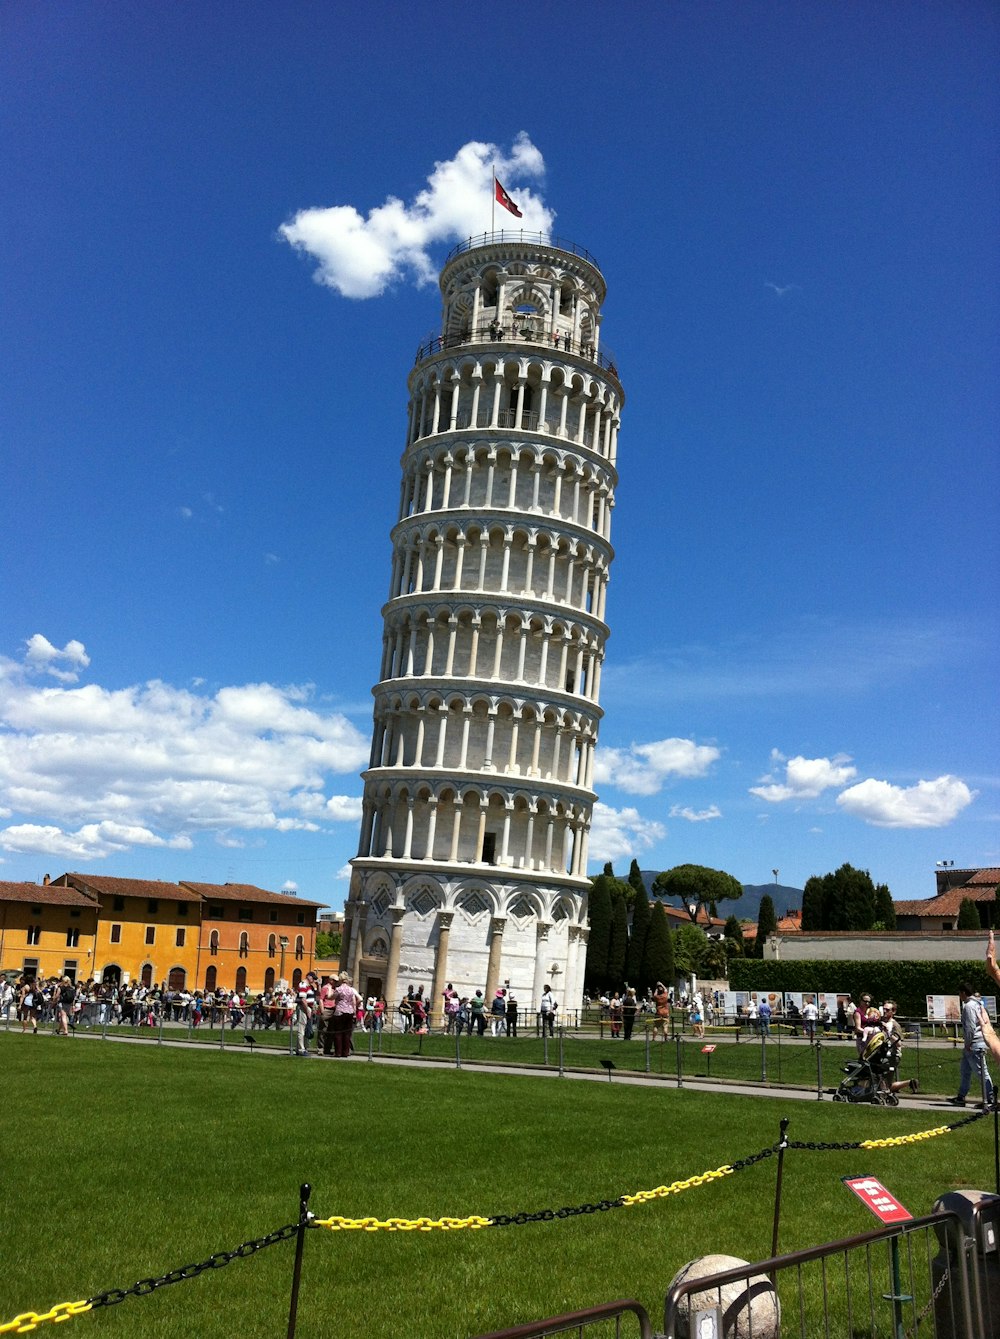 Torre de Aprendizaje PISA • Yeklan